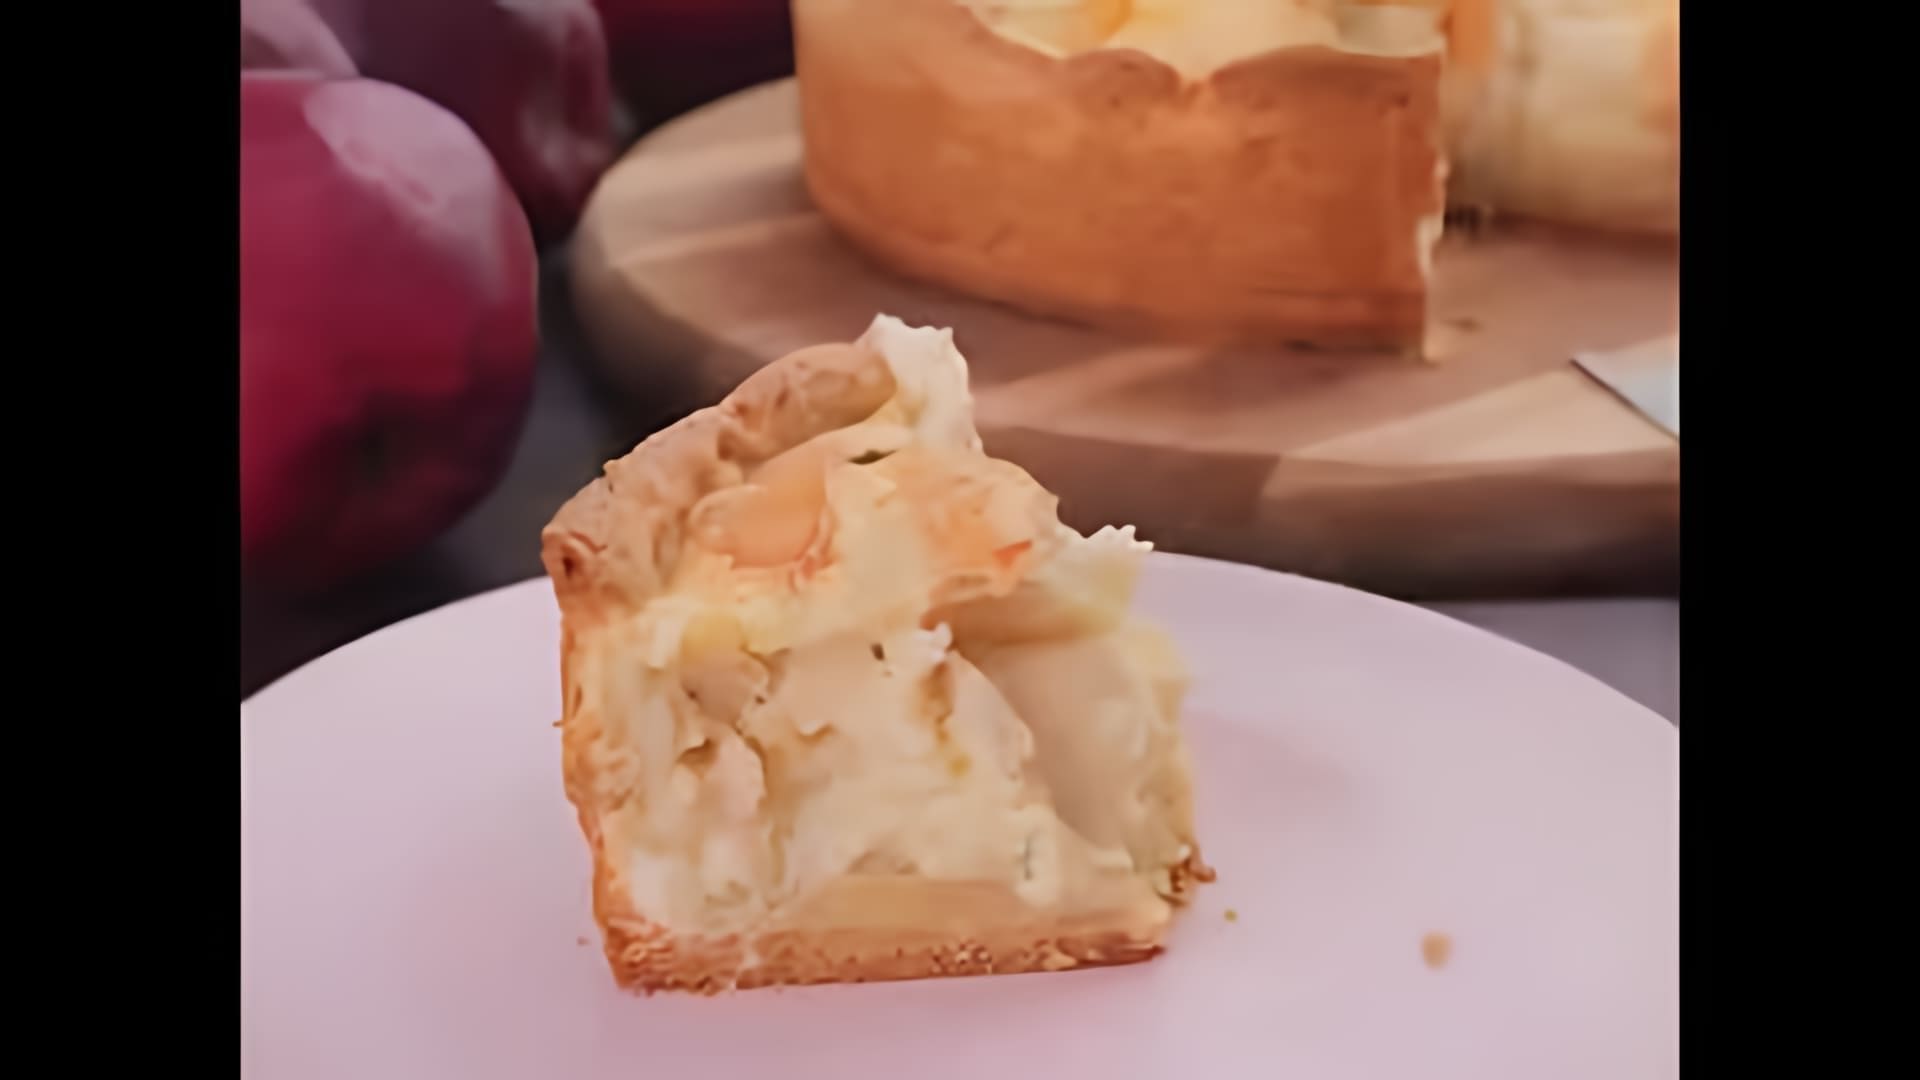 В этом видео демонстрируется рецепт приготовления яблочного пирога со сметанной начинкой